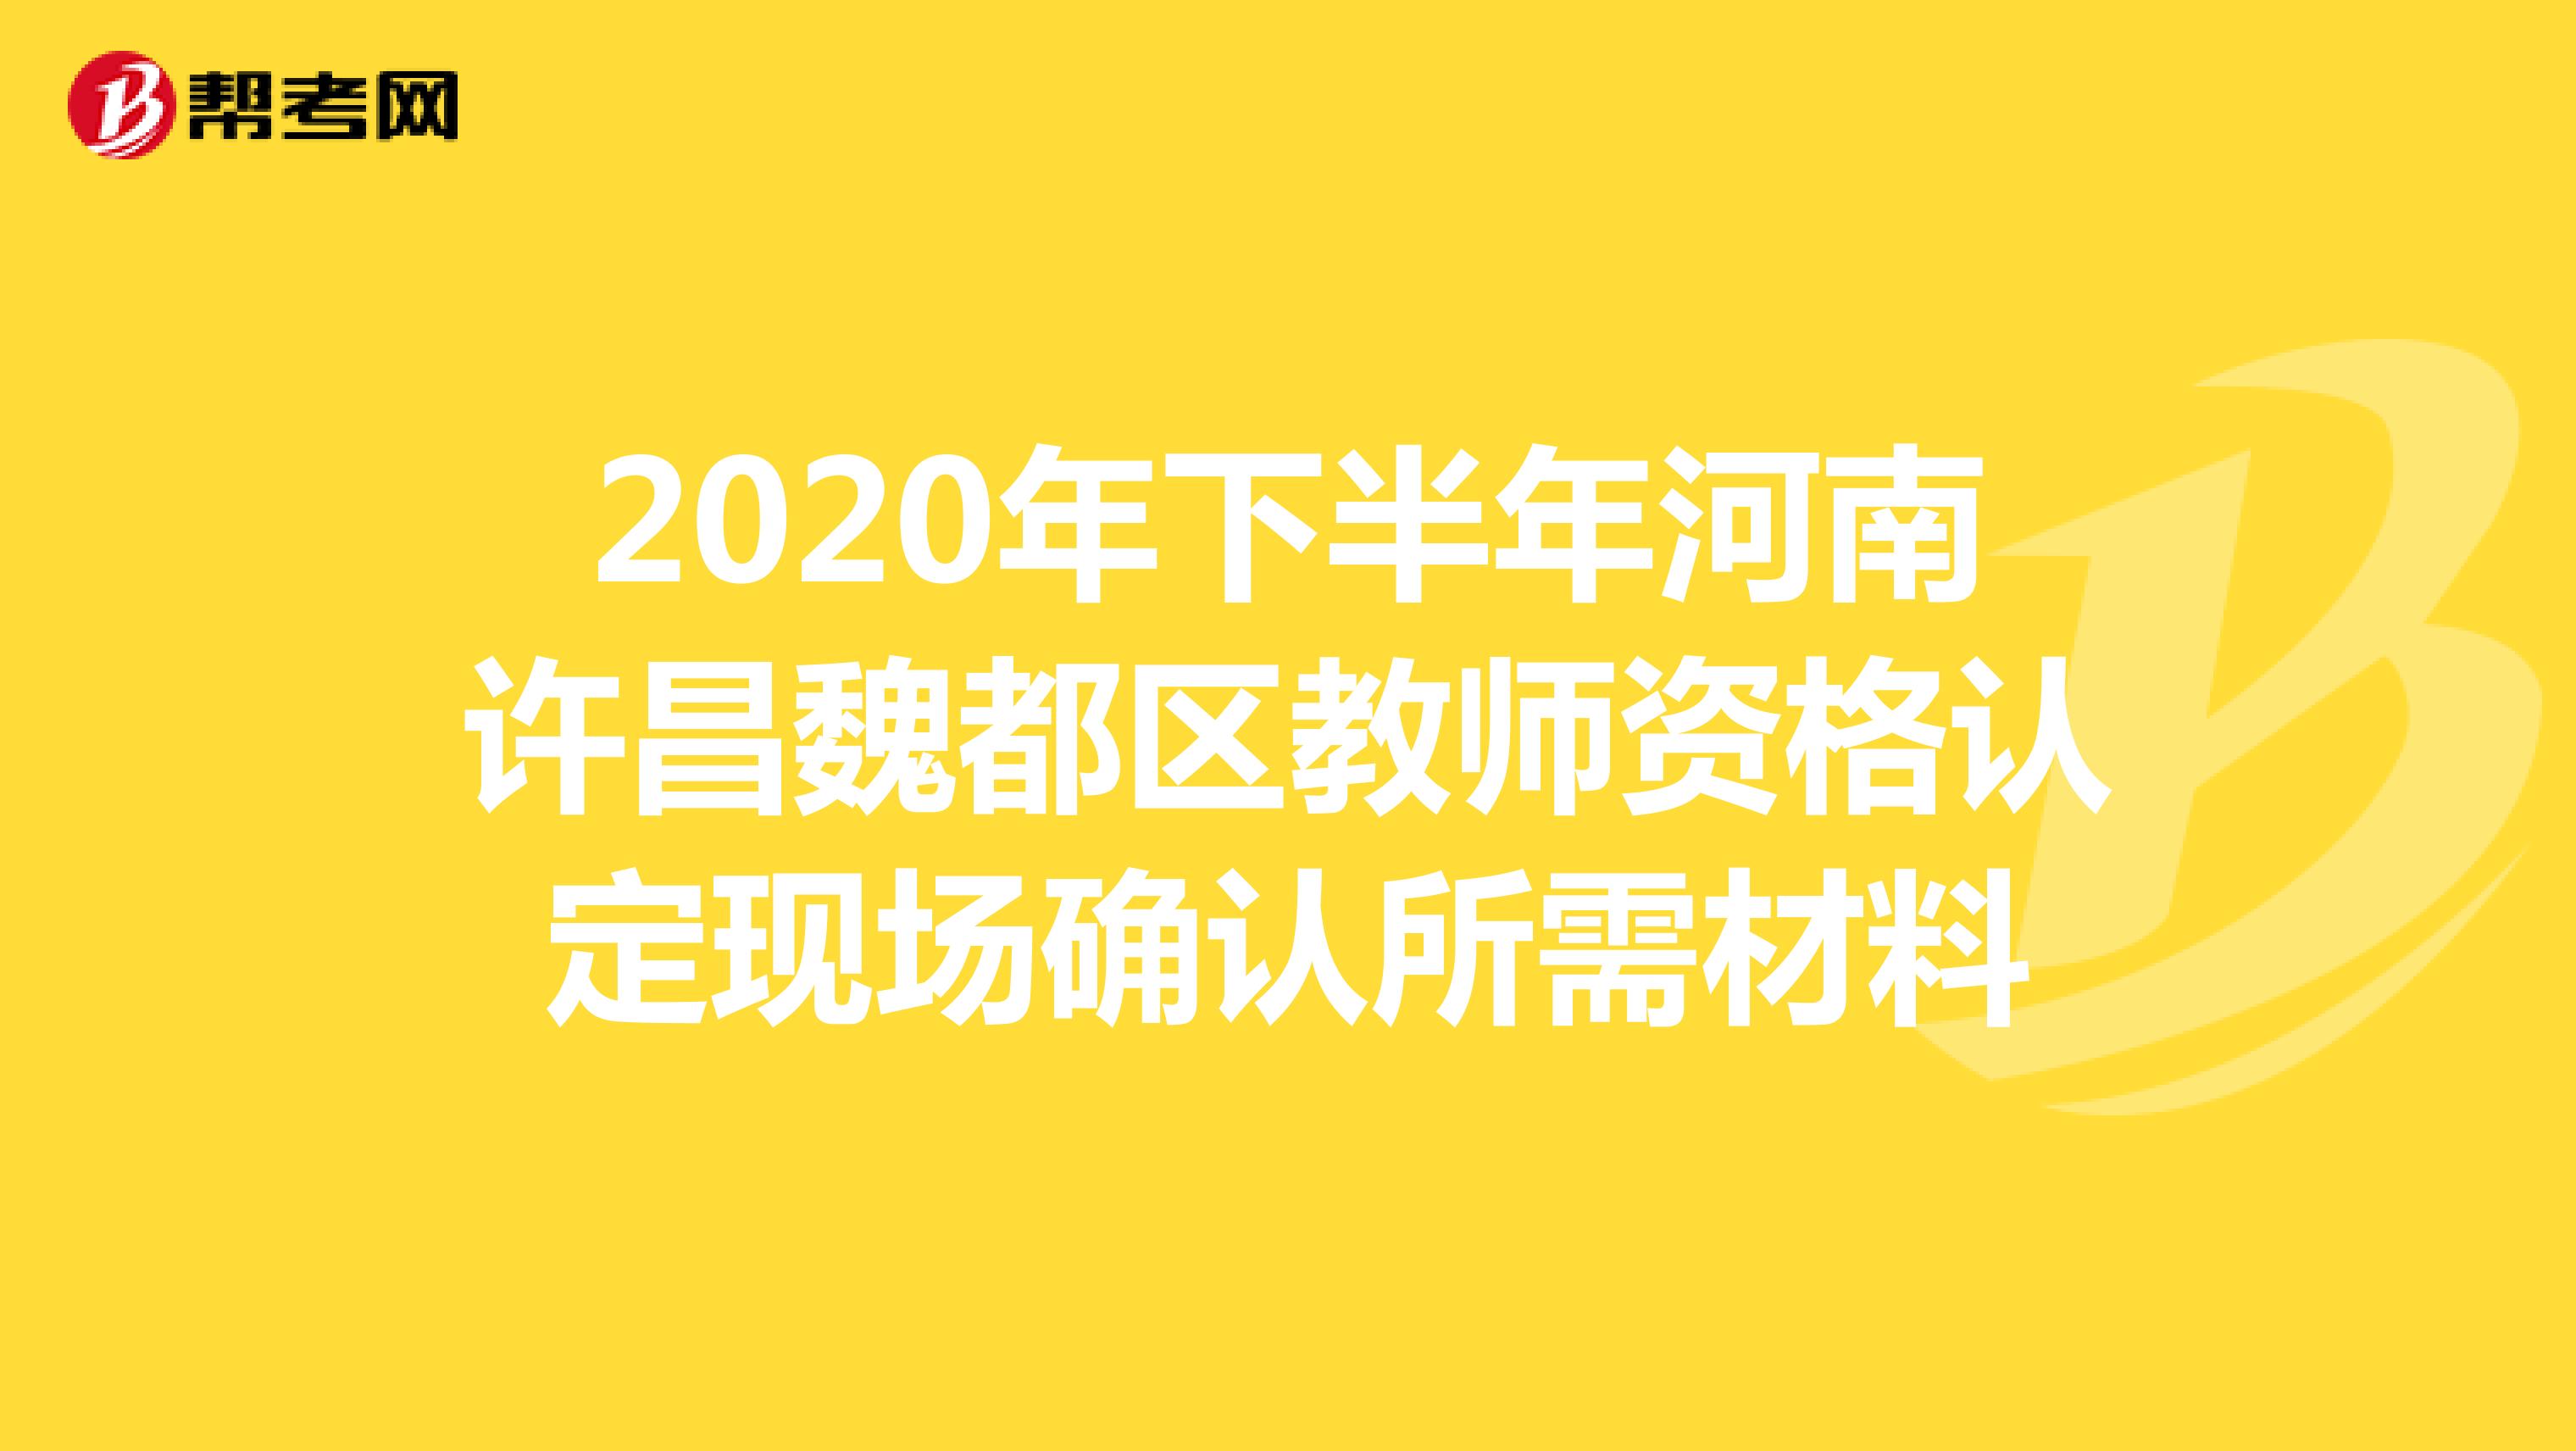 2020年下半年河南许昌魏都区教师资格认定现场确认所需材料